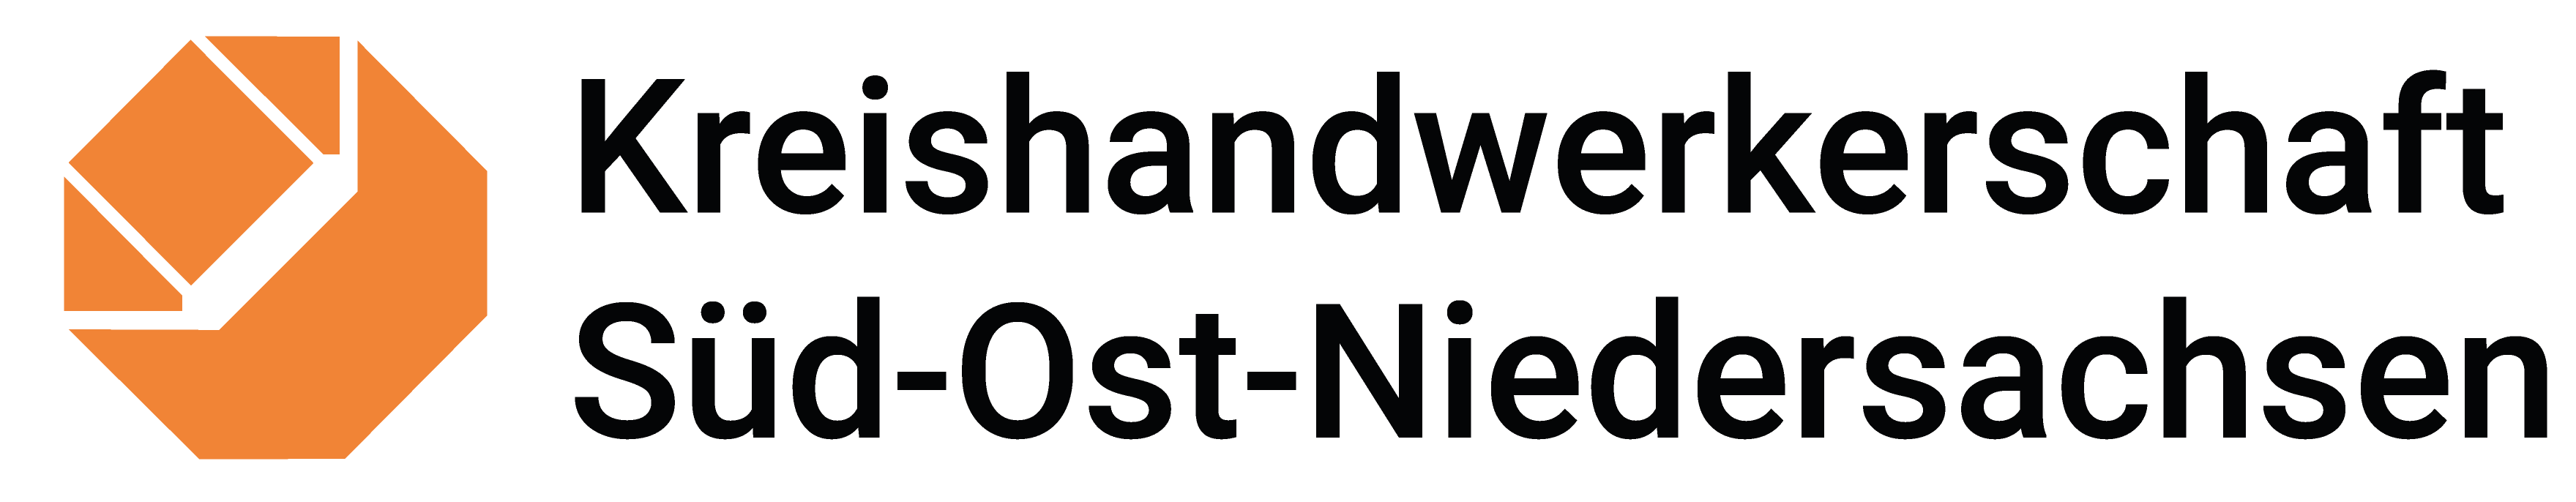 kreishandwerkerschaft-sued-ost-niedersachsen-logo